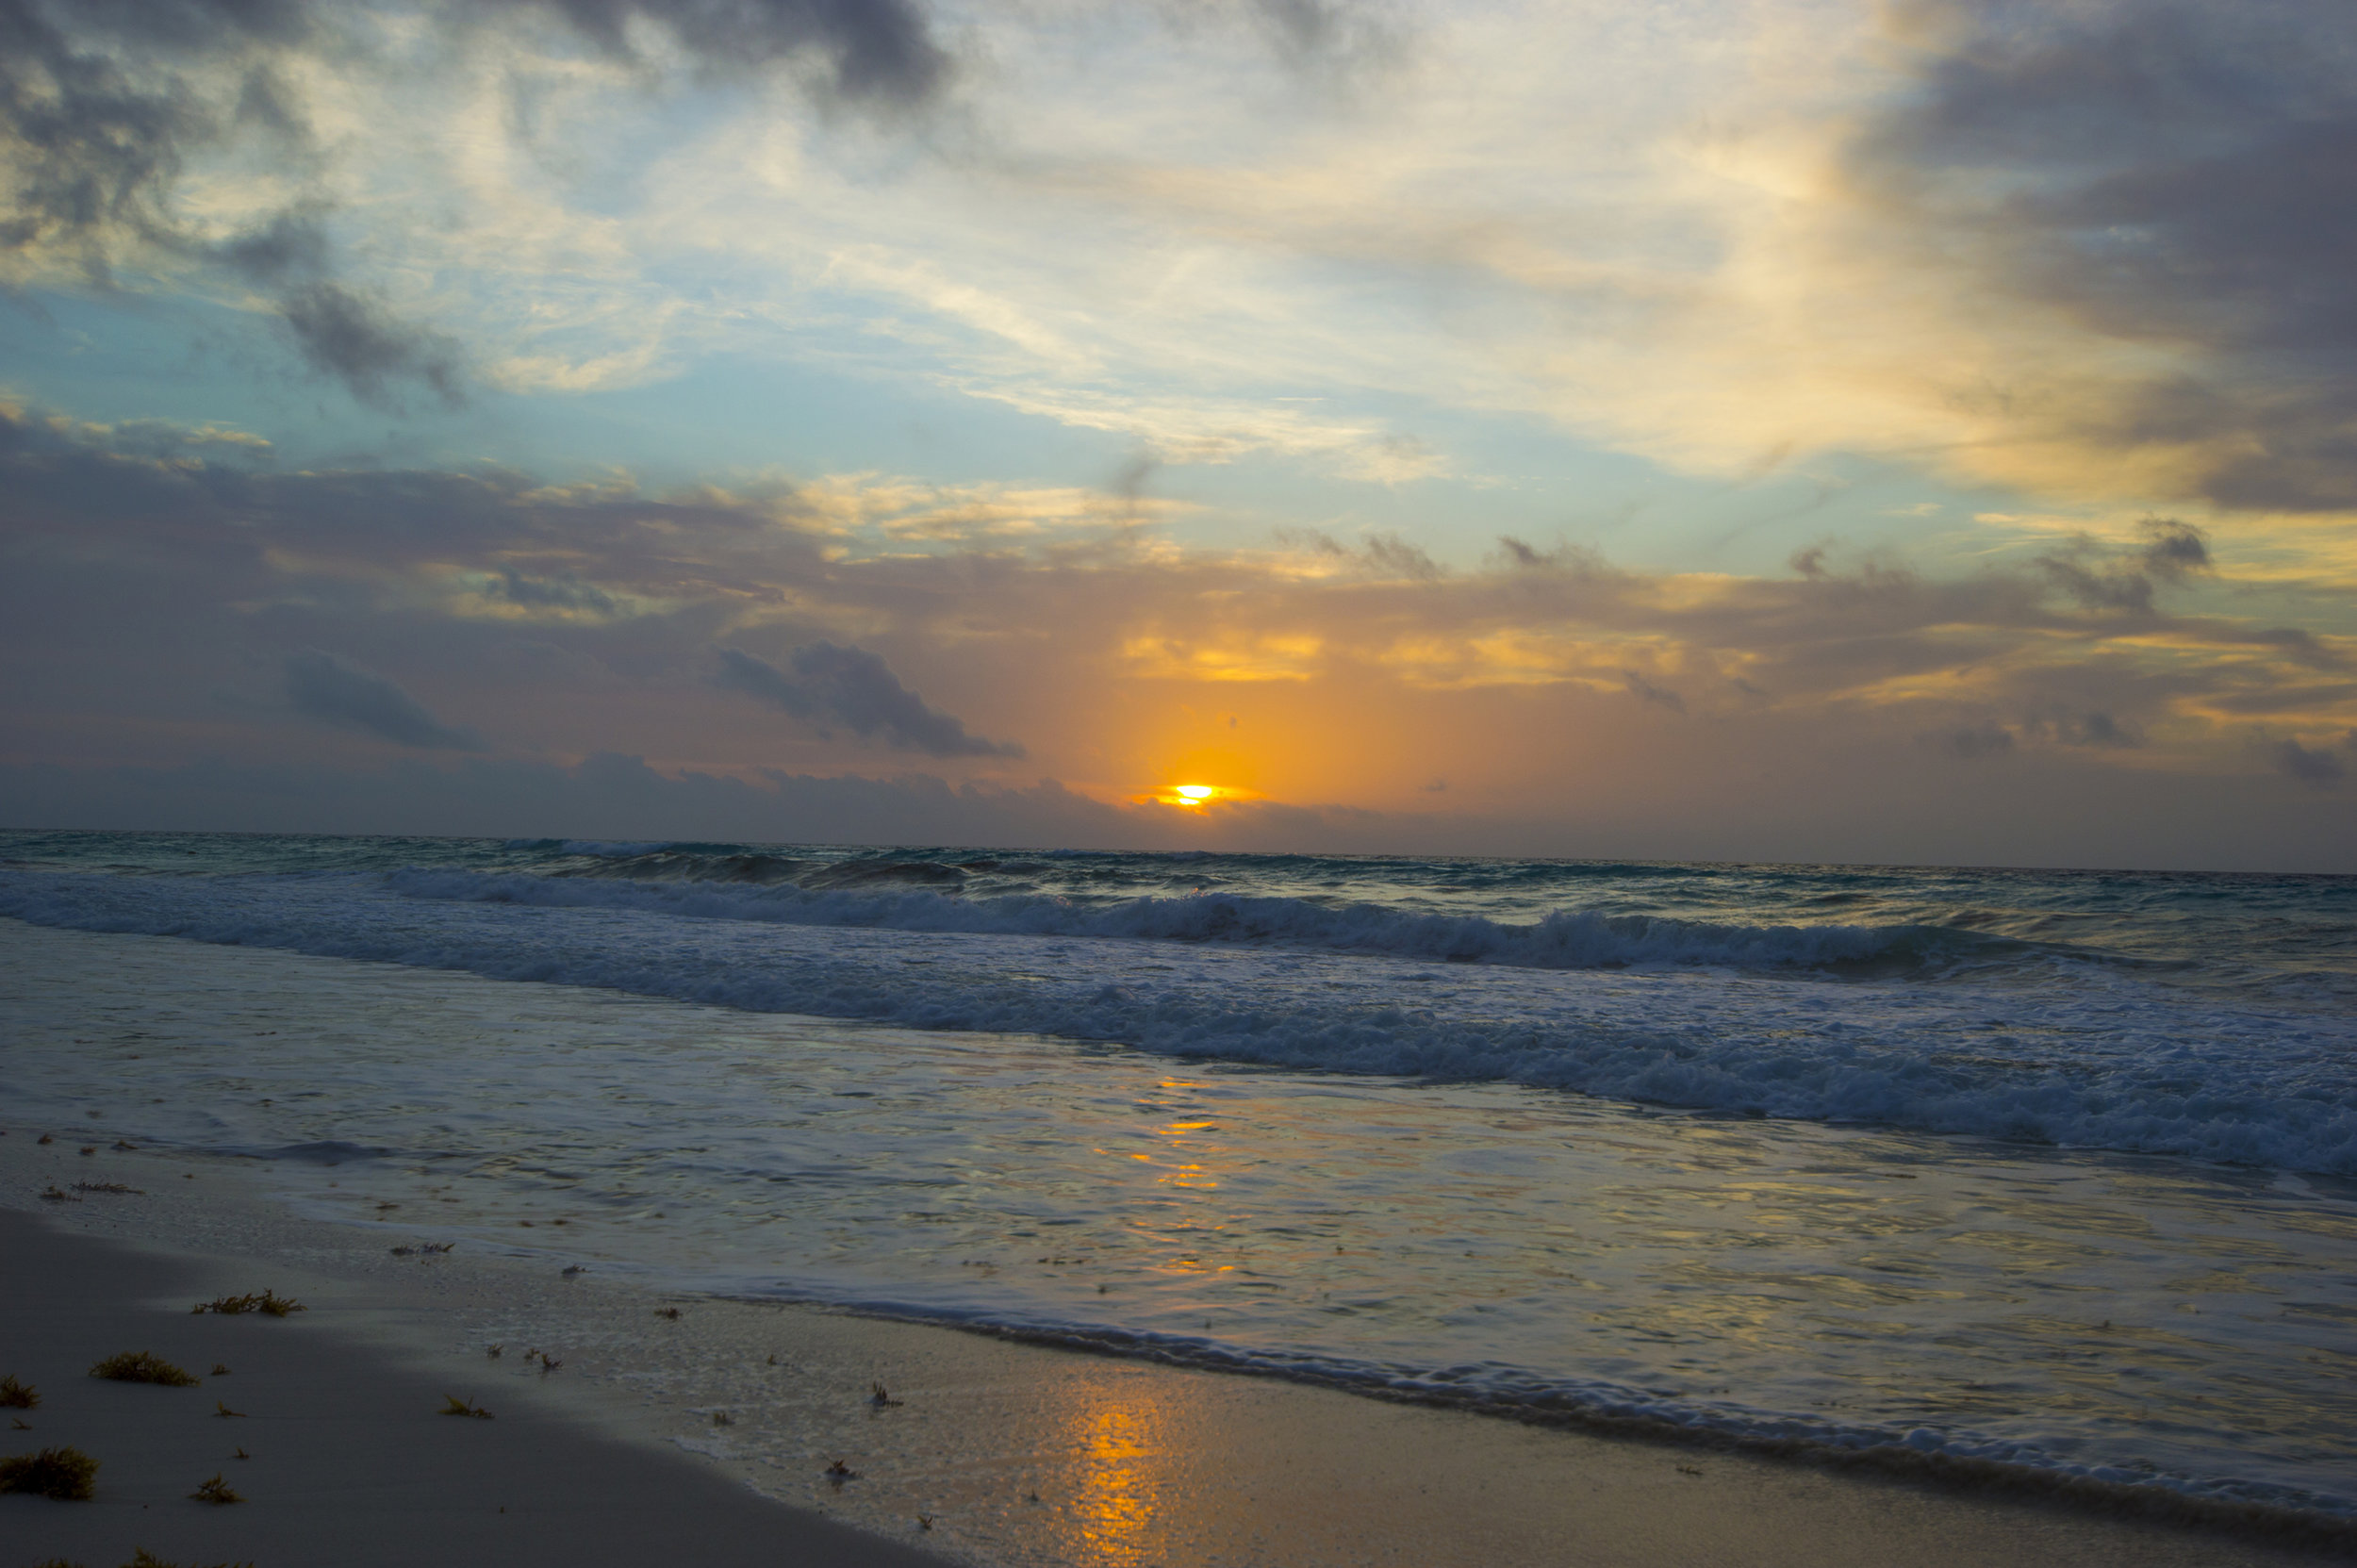 Sunrise in Cancun, Mexico